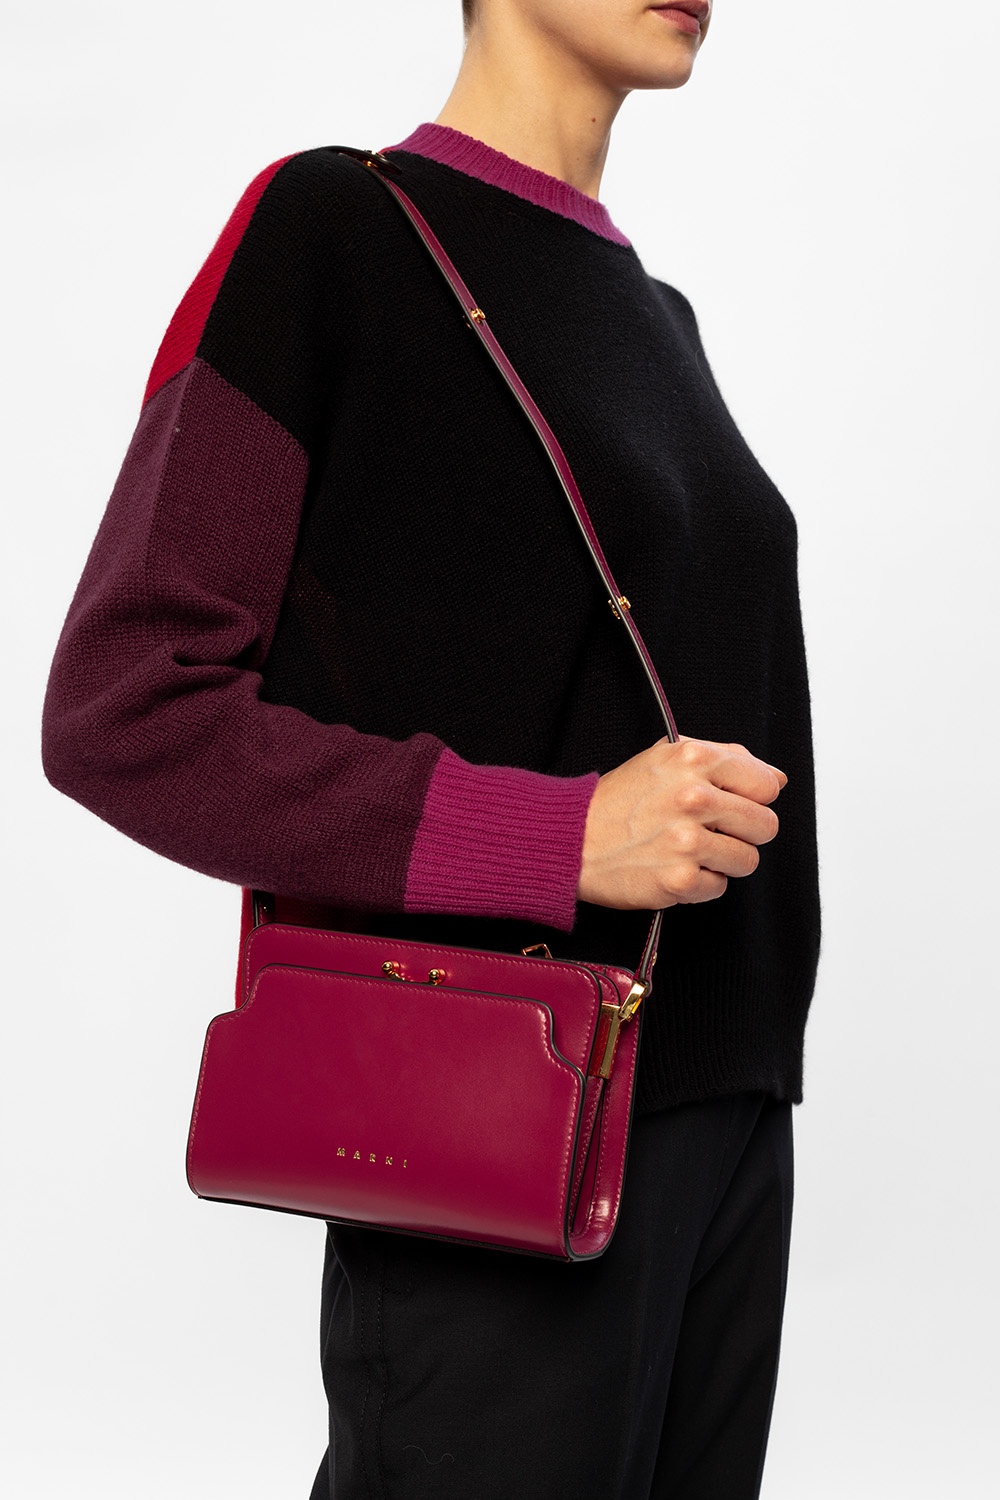 【MARNI】 'Trunk' Medium Shoulder Bag, Pink, One Size